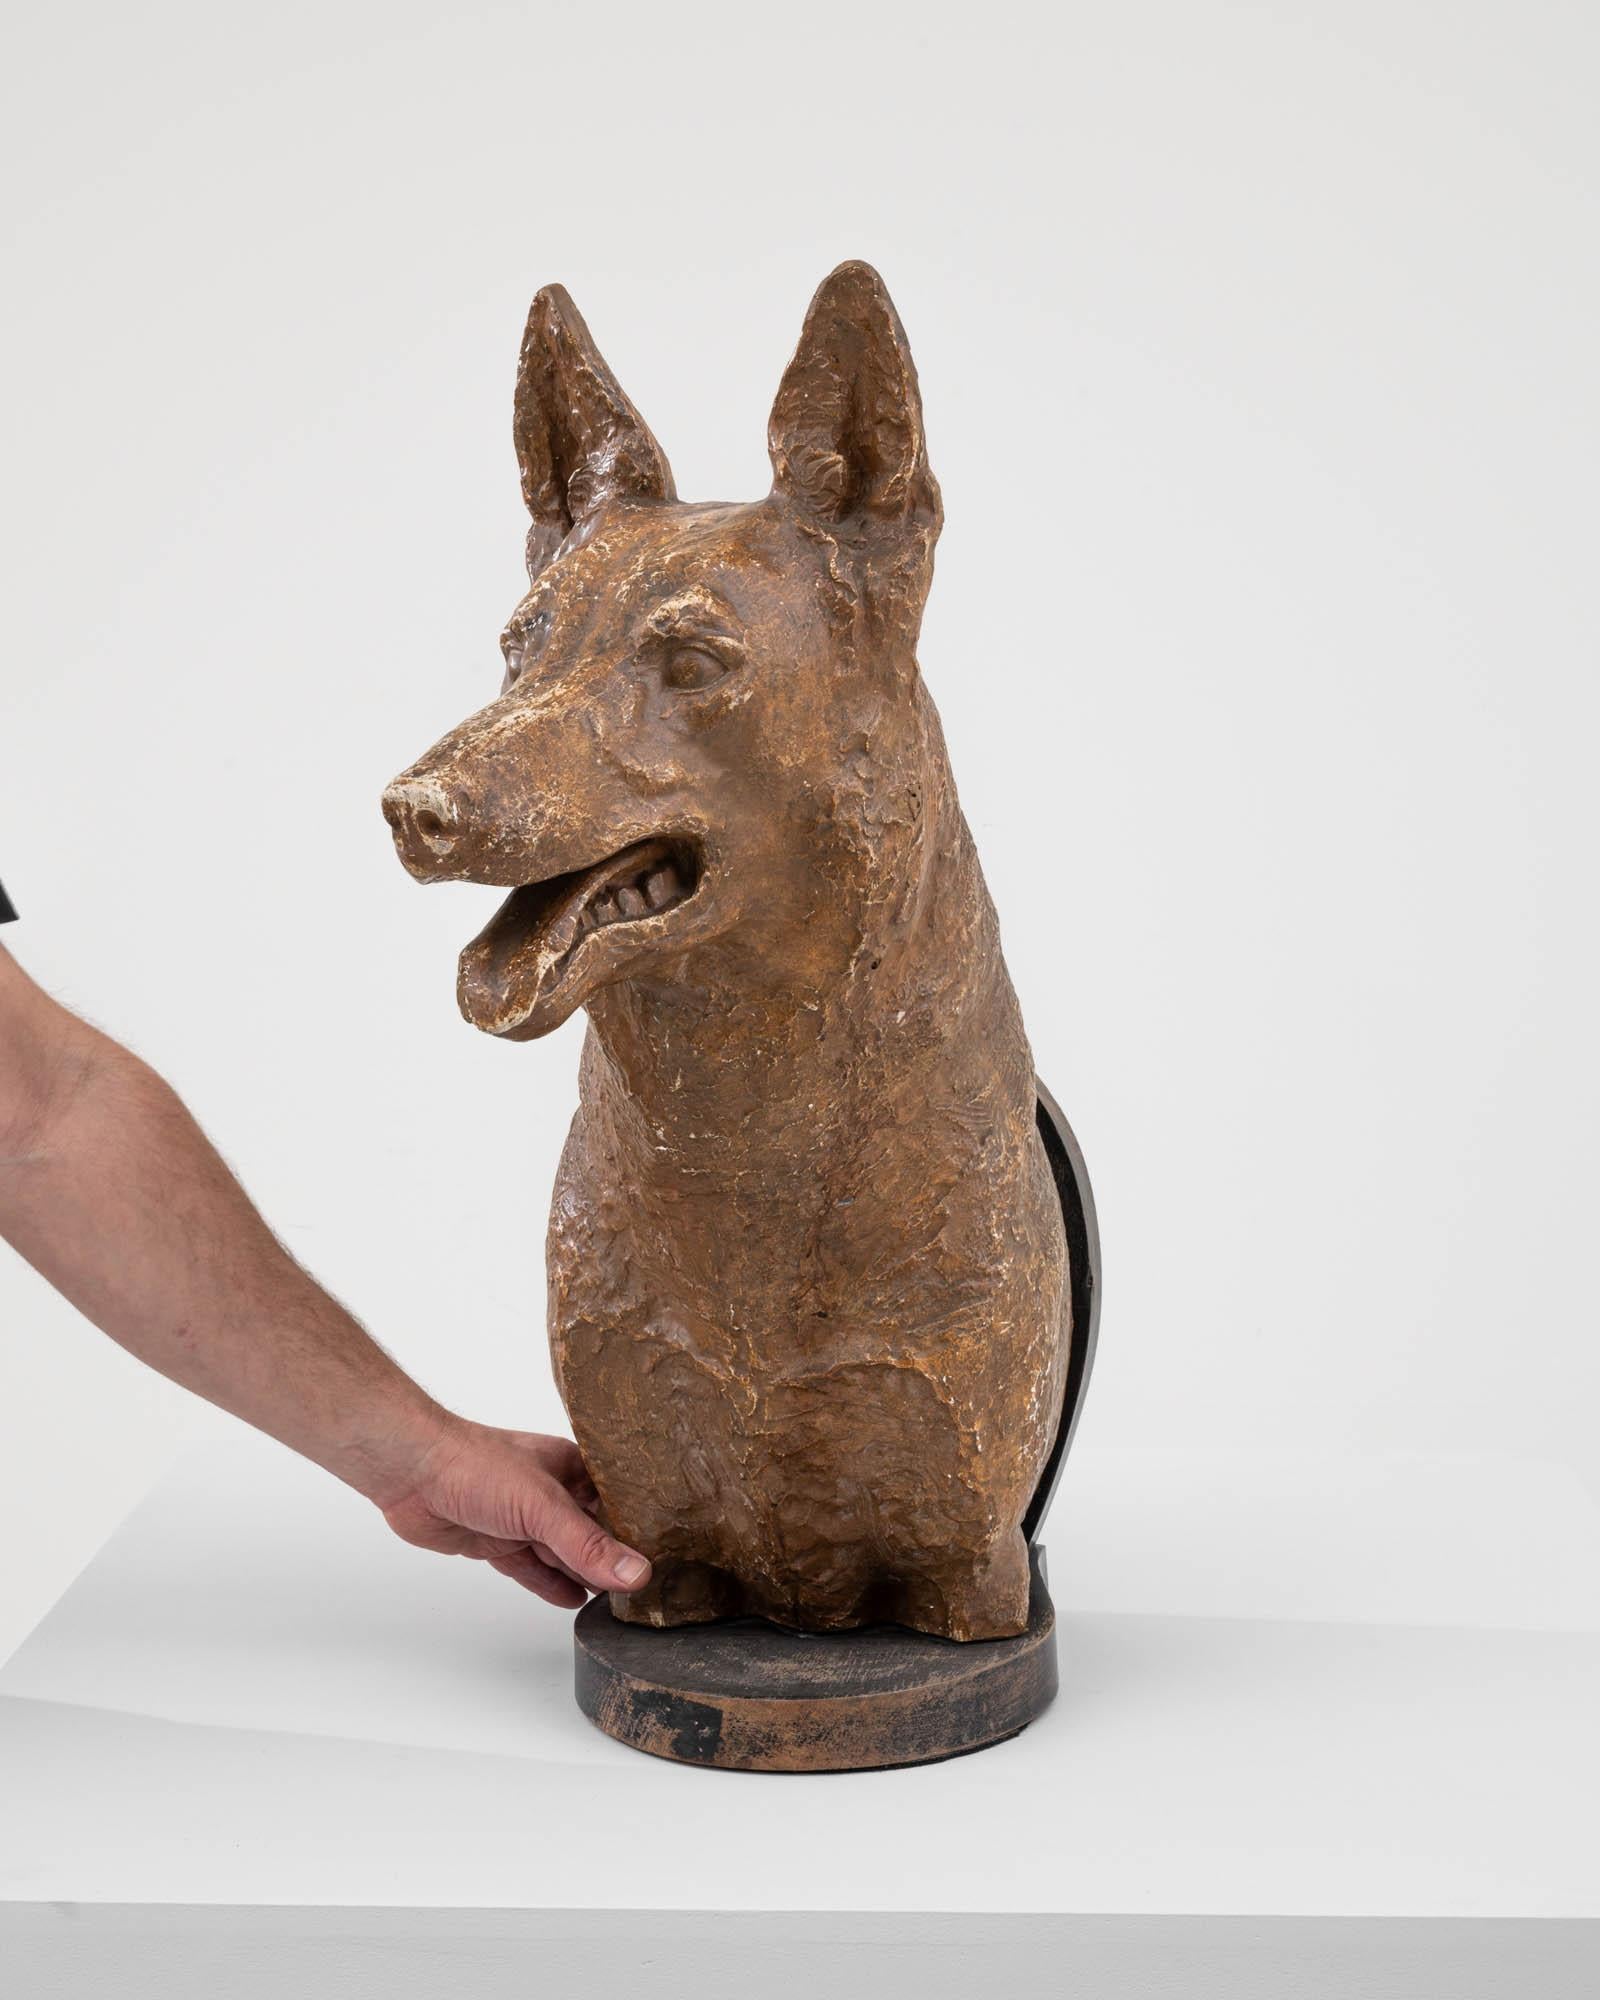 Diese Hundeskulptur aus Gips aus dem frühen 20. Jahrhundert strahlt einen gewissen Adel und Charme aus. Die mit viel Liebe zum Detail gefertigte Skulptur zeigt einen treuen Hund mit einem gelassenen und aufmerksamen Ausdruck. Das MATERIAL Gips